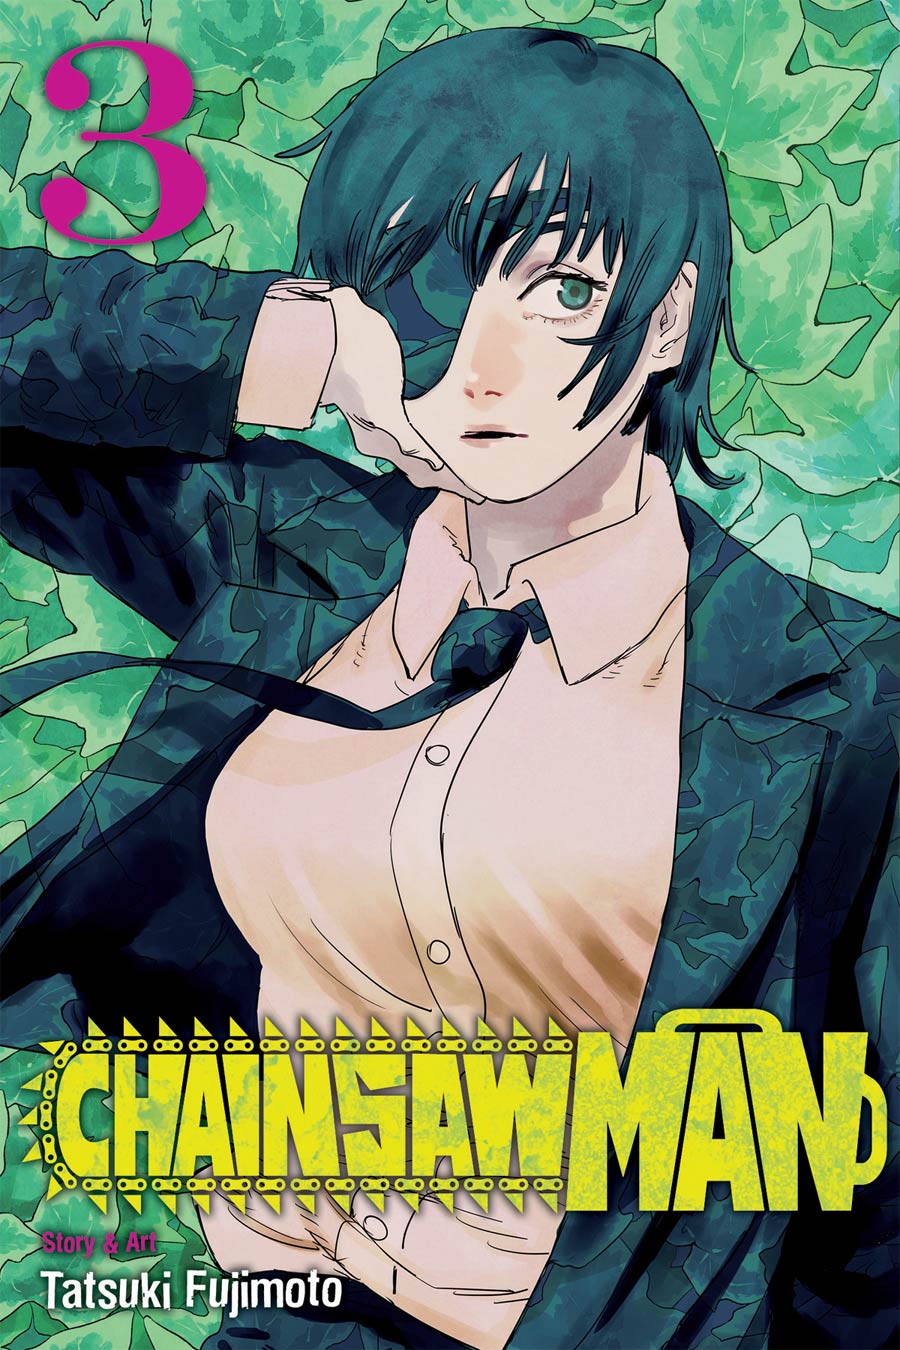 Chainsaw Man Vol 3 GN